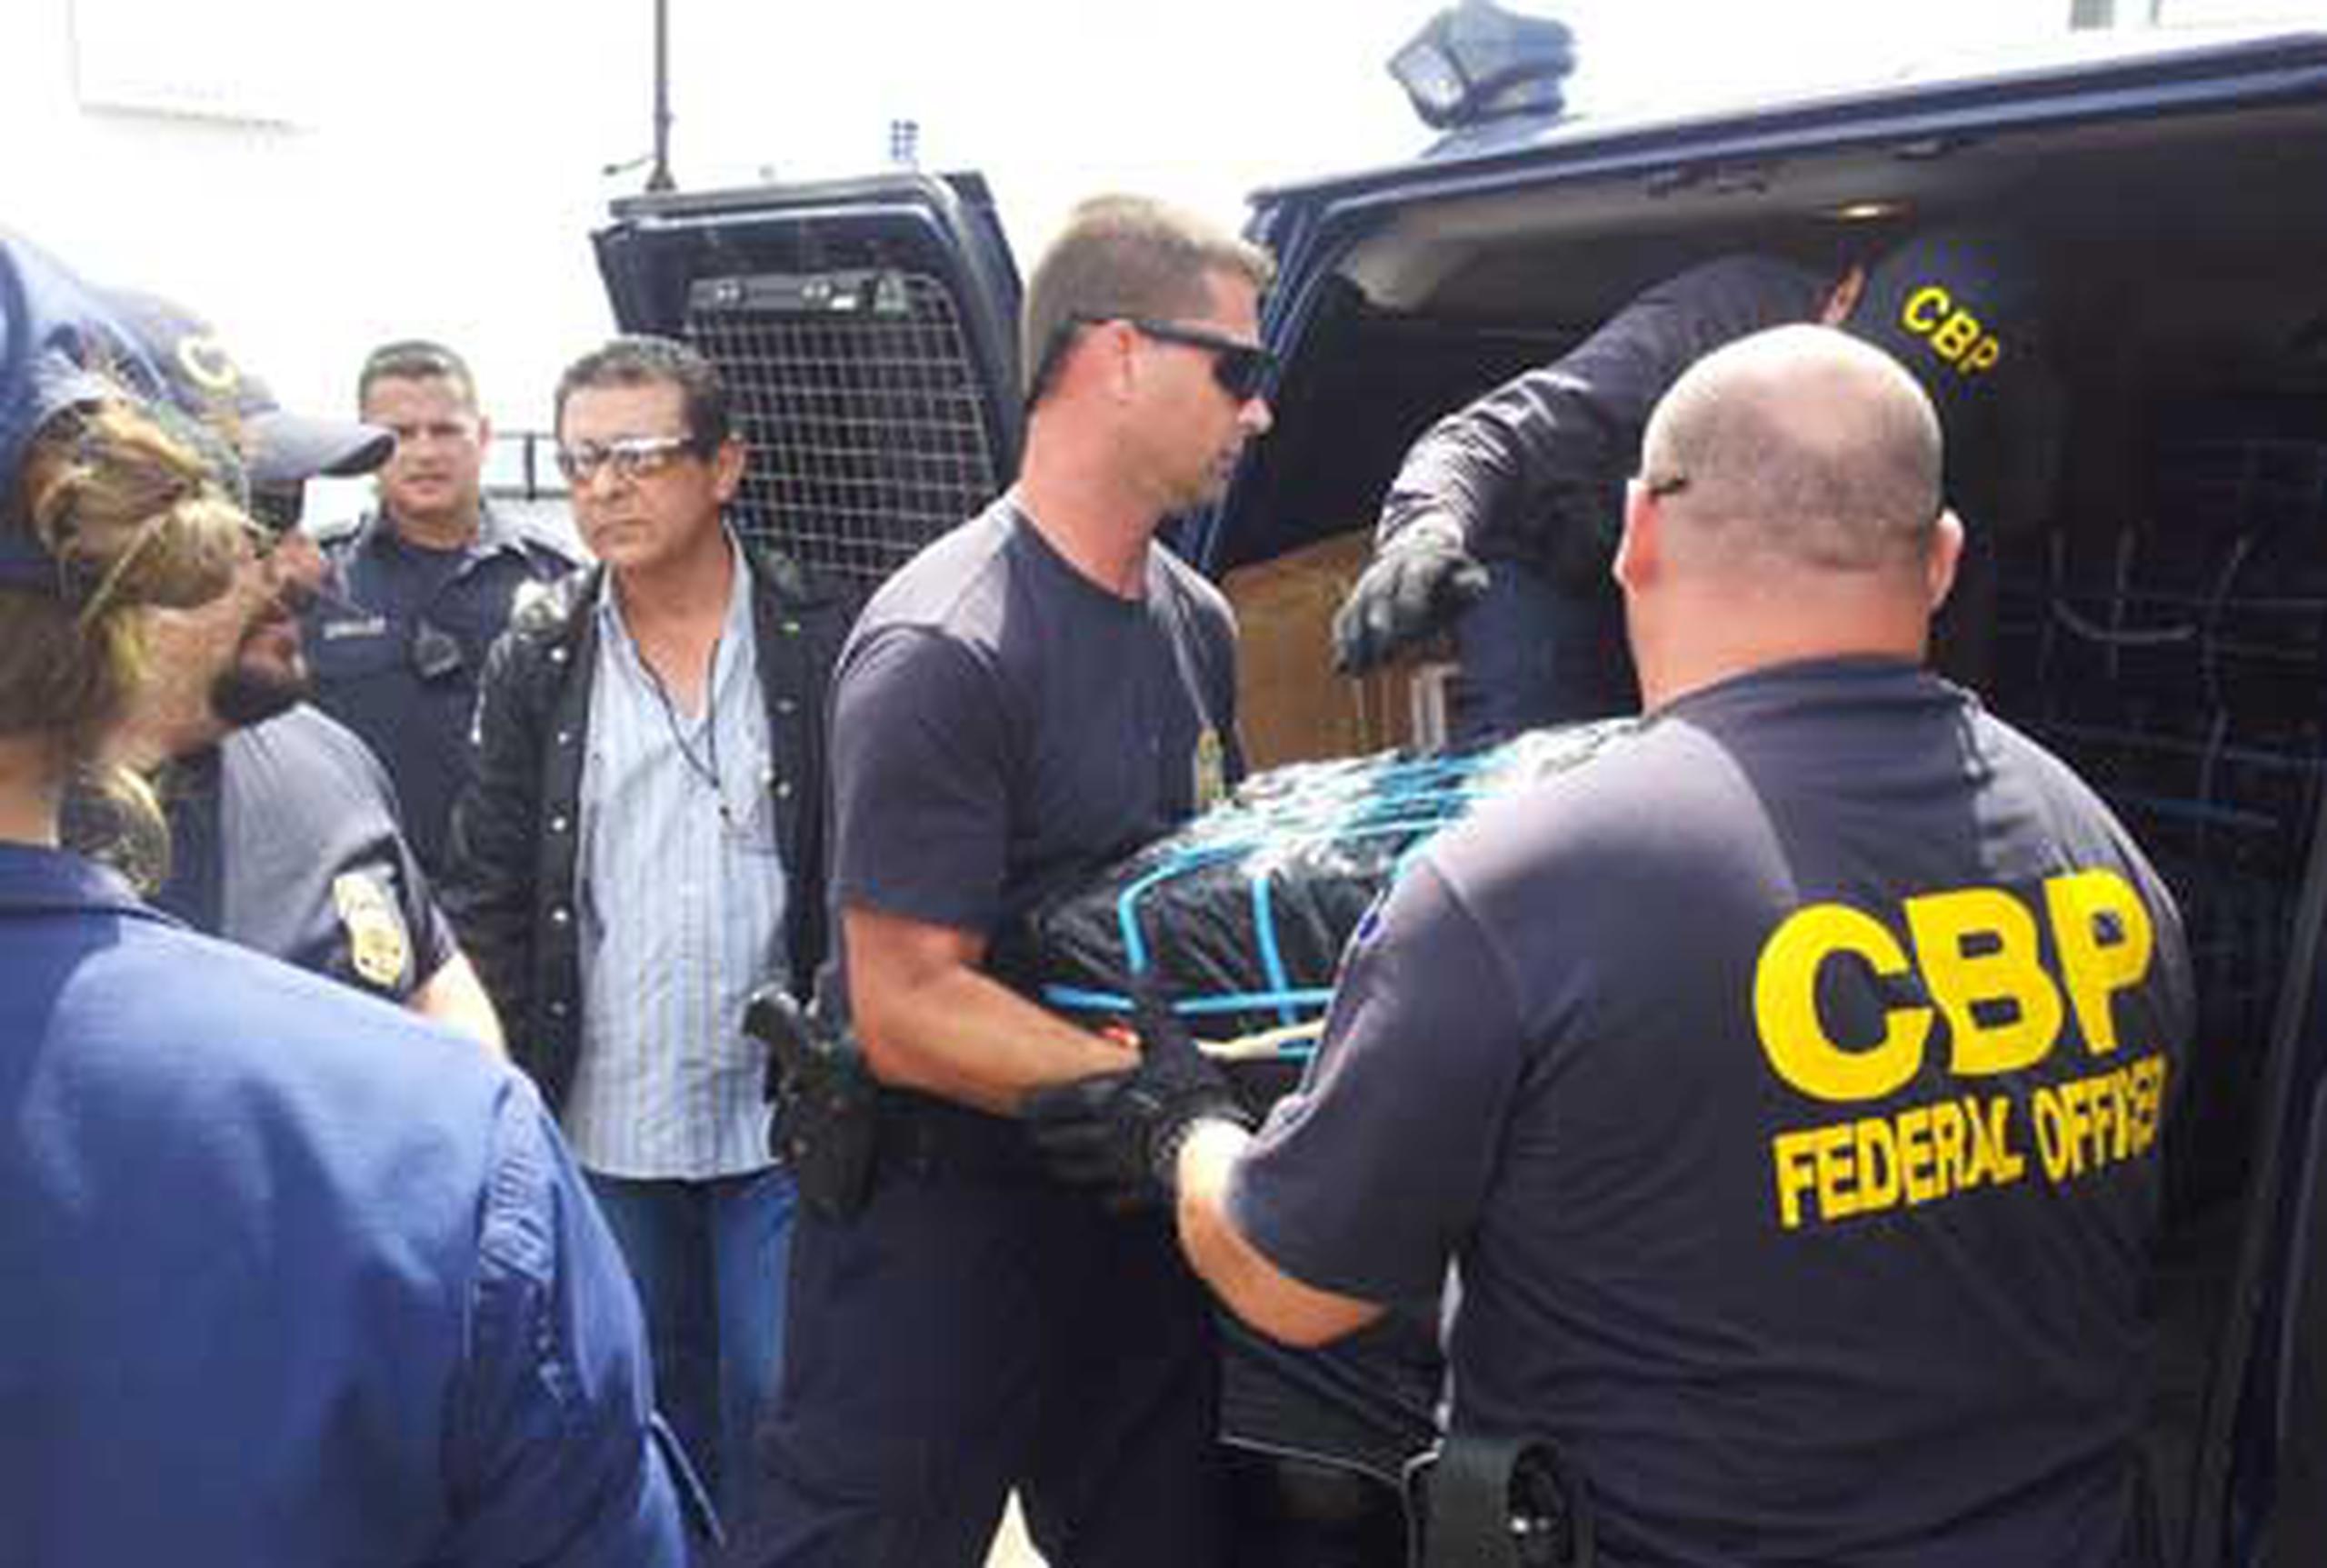 Los federales sospechan que la droga provenía de Venezuela o Colombia. (GFRMedia.com)